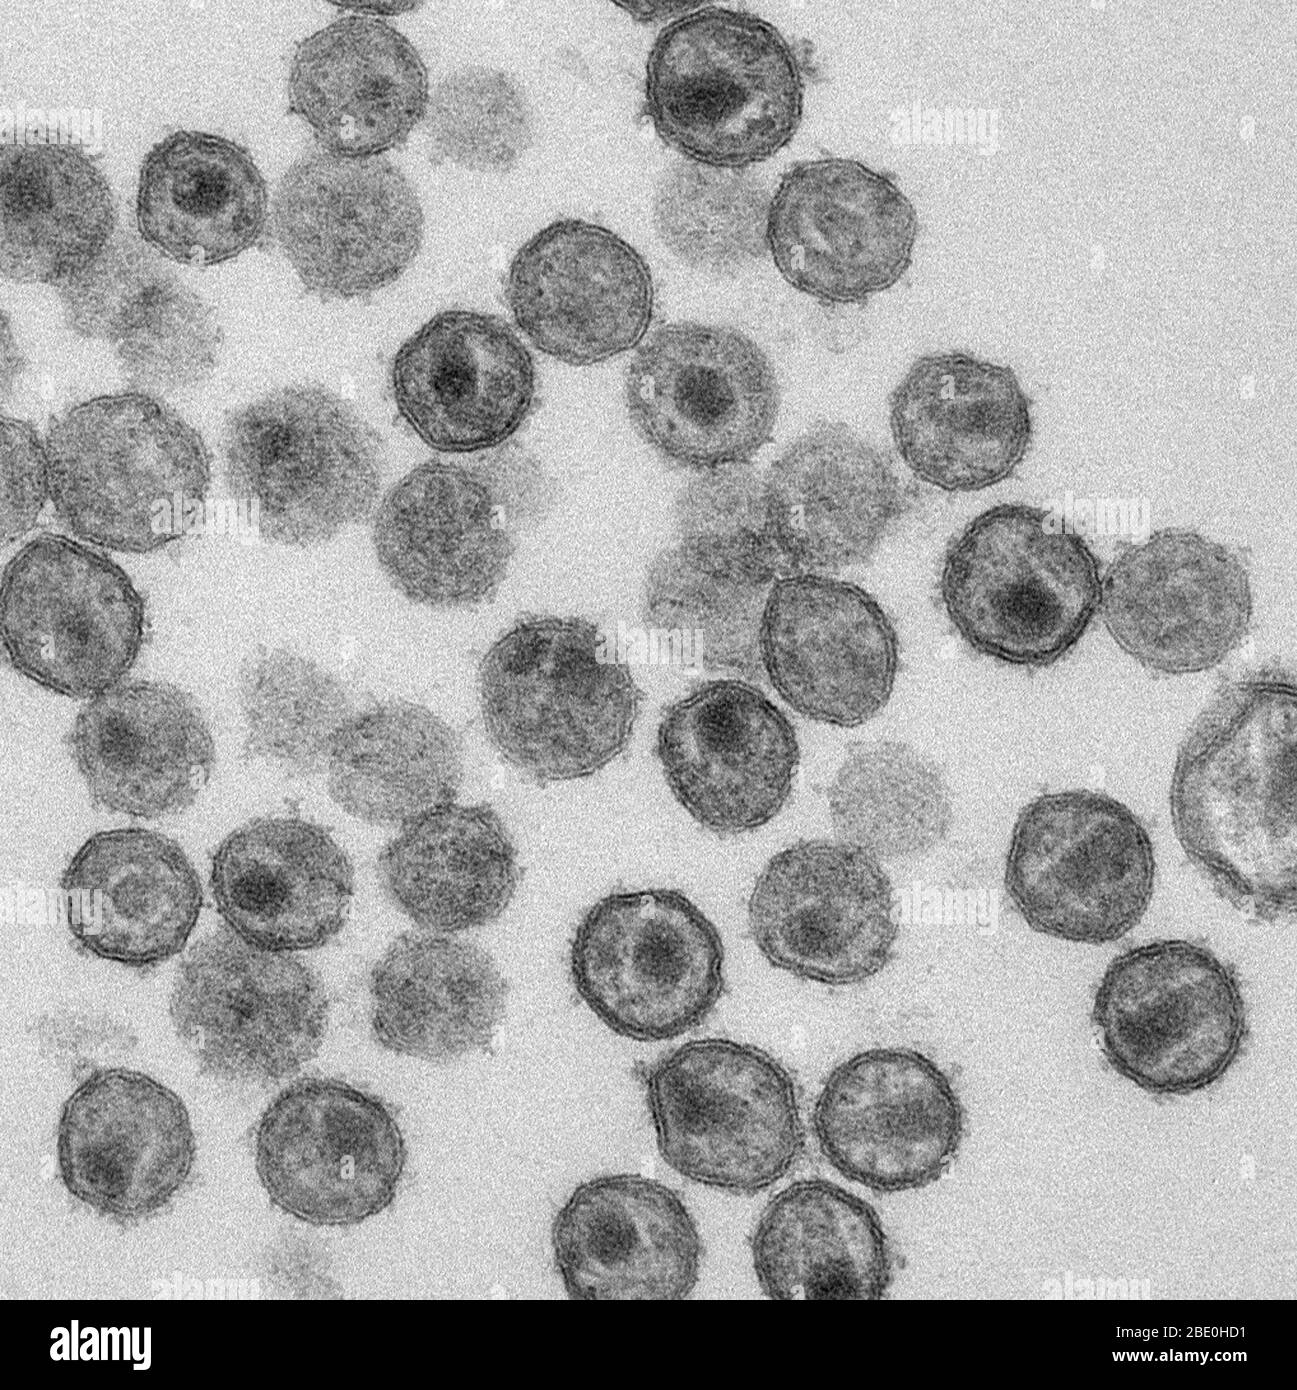 Micrografia elettronica a trasmissione (TEM) che mostra particelle di SIV (Simian Immunodeficiency Virus) mature. Ingrandimento sconosciuto. Foto Stock